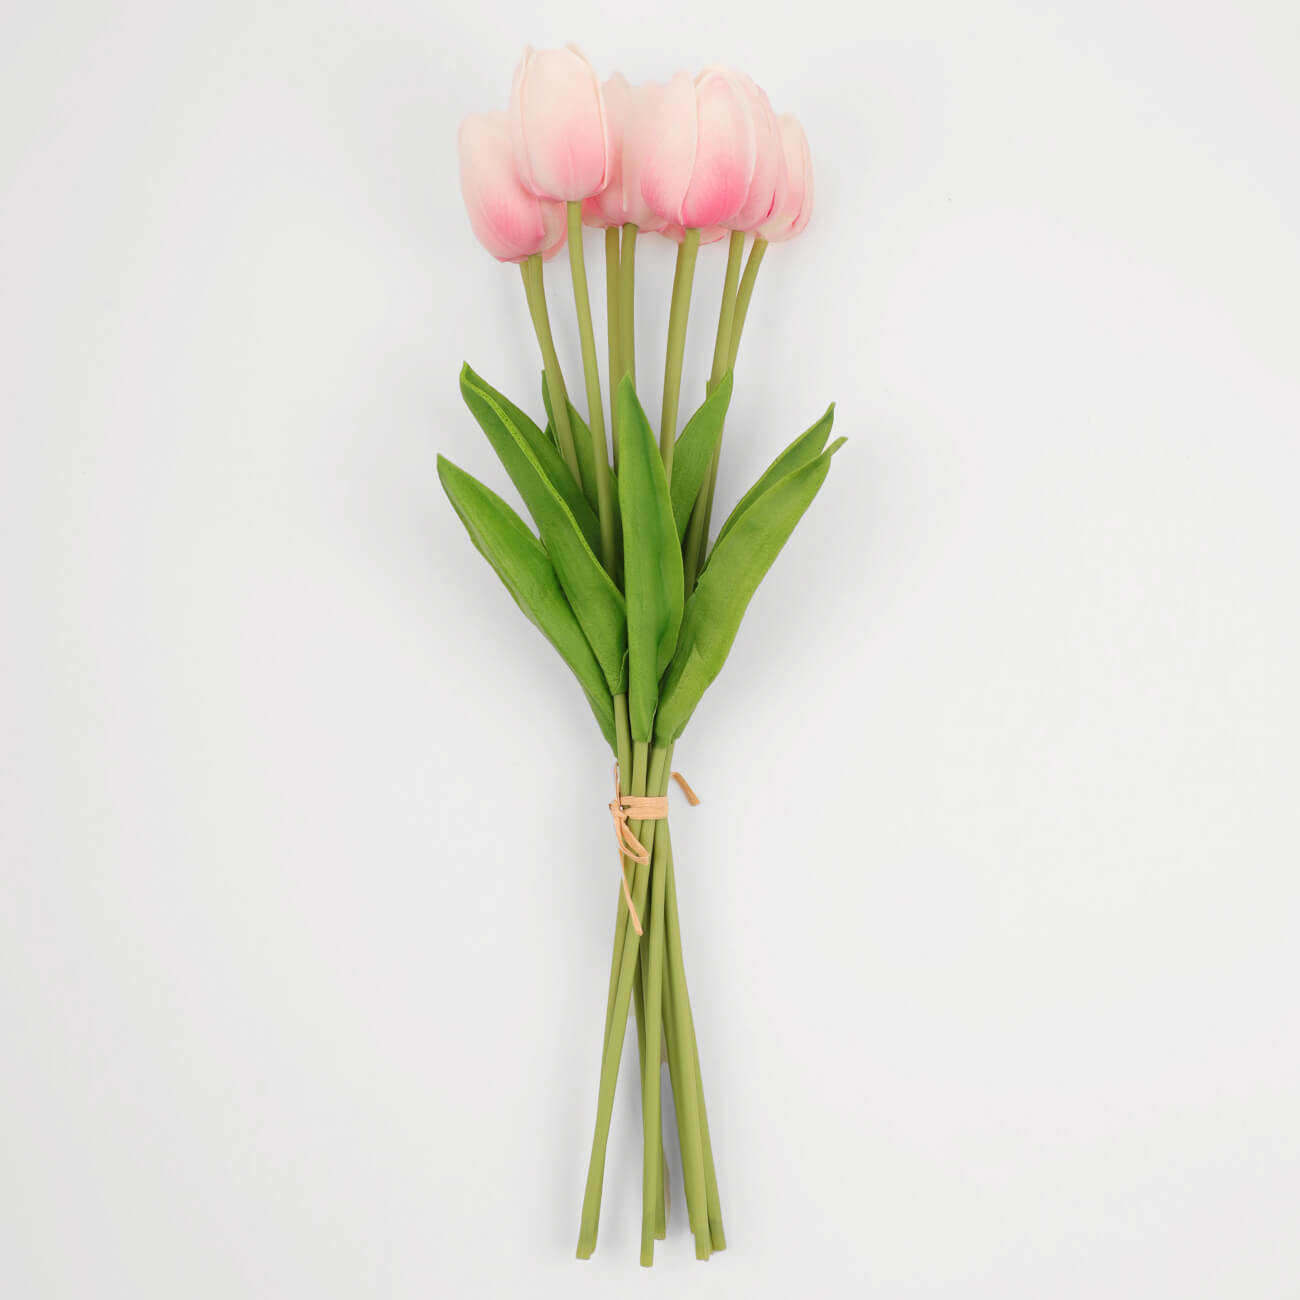 Букет искусственный, 35 см, полиуретан, Розовые тюльпаны, Tulip garden букет искусственный 35 см полиуретан розовые тюльпаны tulip garden